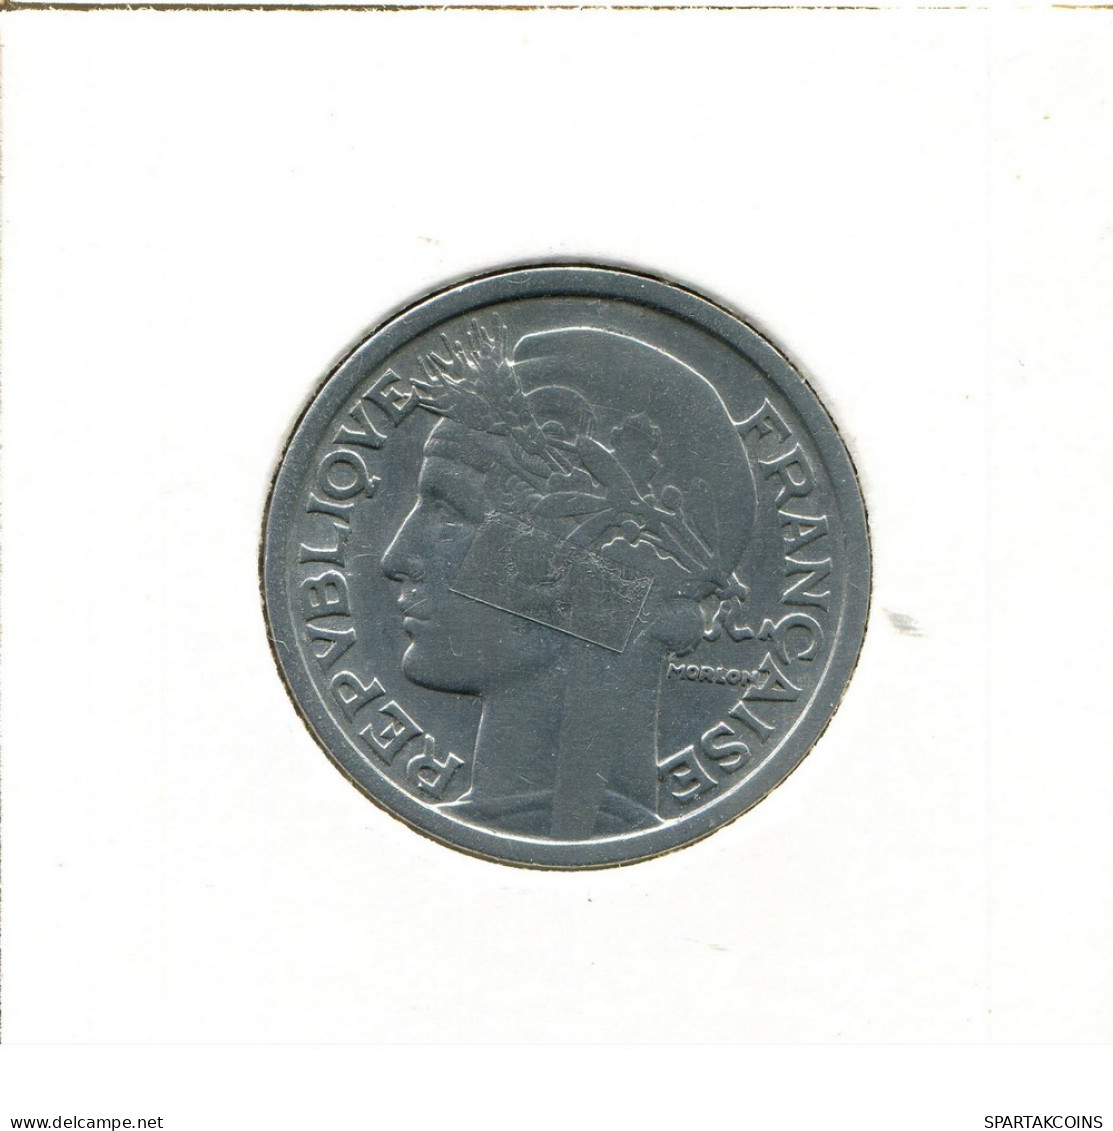 2 FRANCS 1946 FRANCIA FRANCE Moneda #BB591.E - 2 Francs